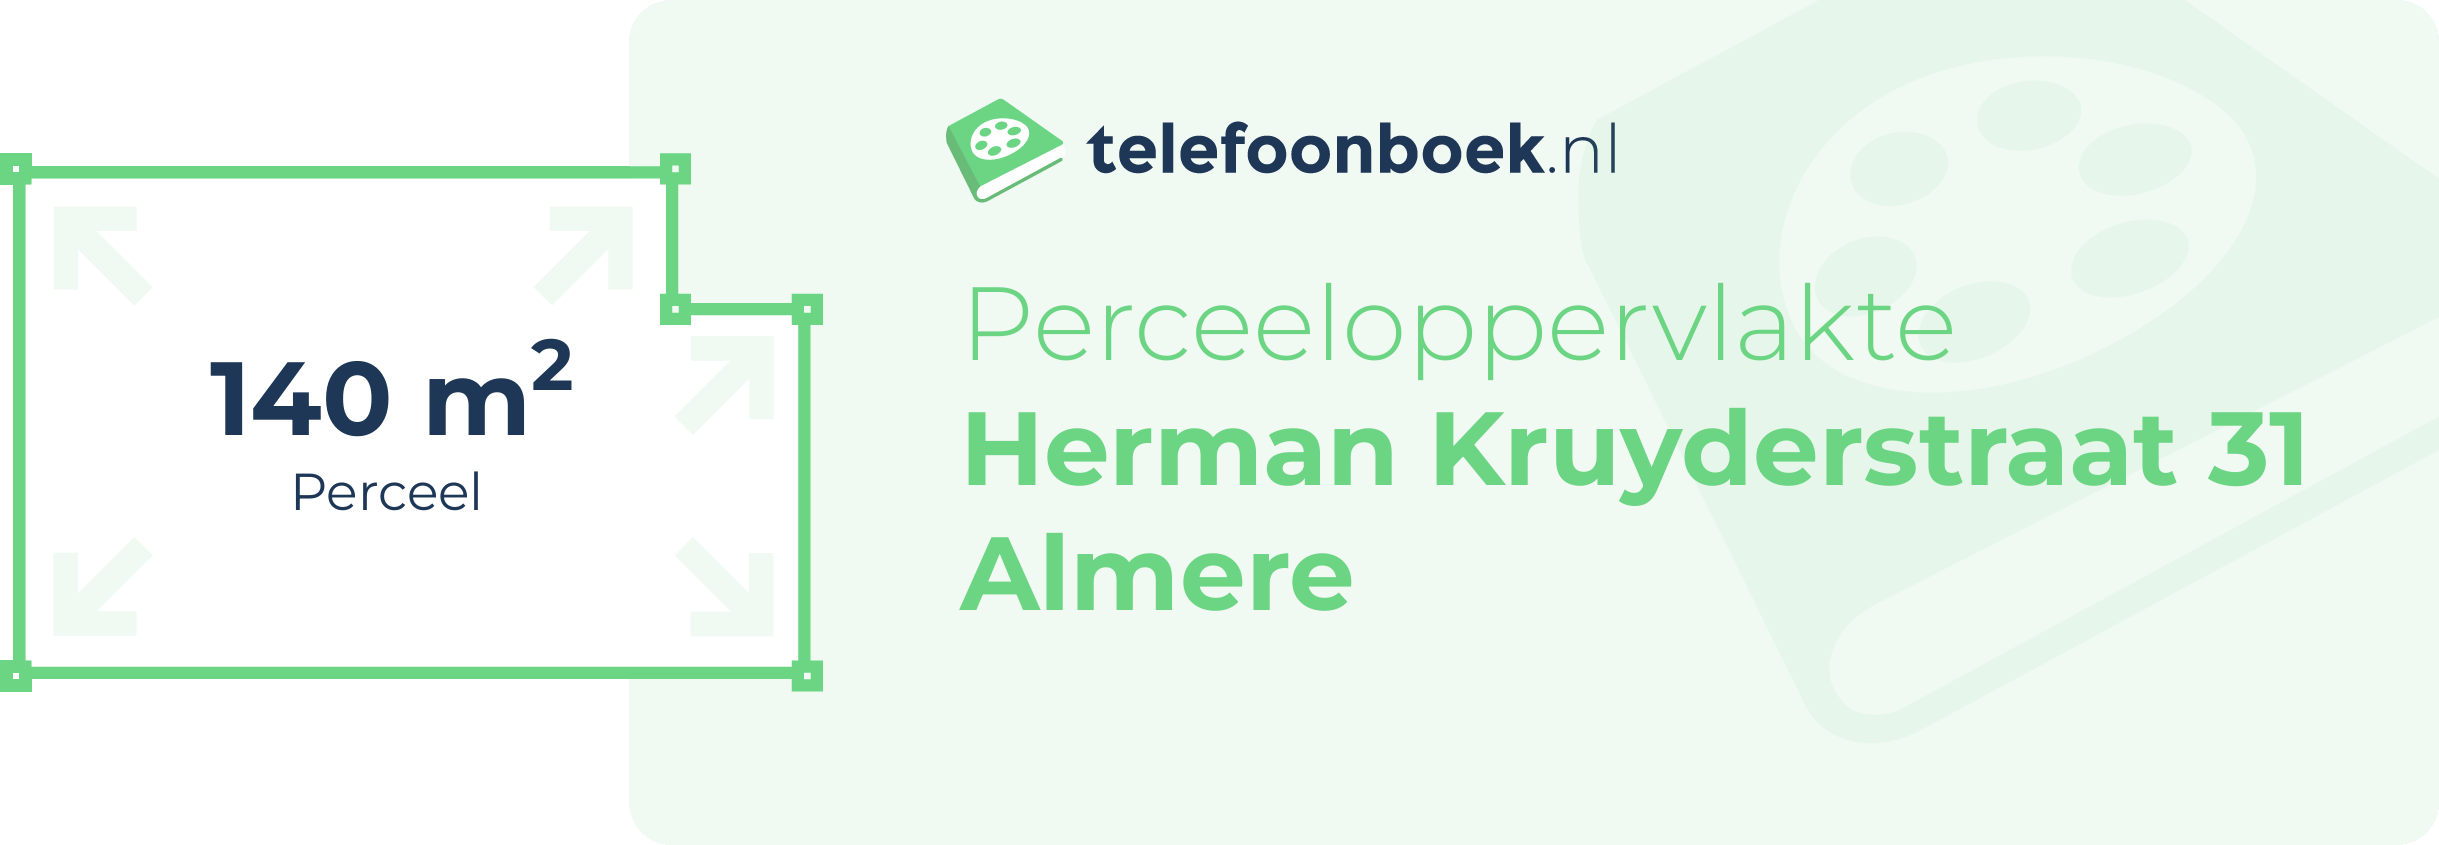 Perceeloppervlakte Herman Kruyderstraat 31 Almere